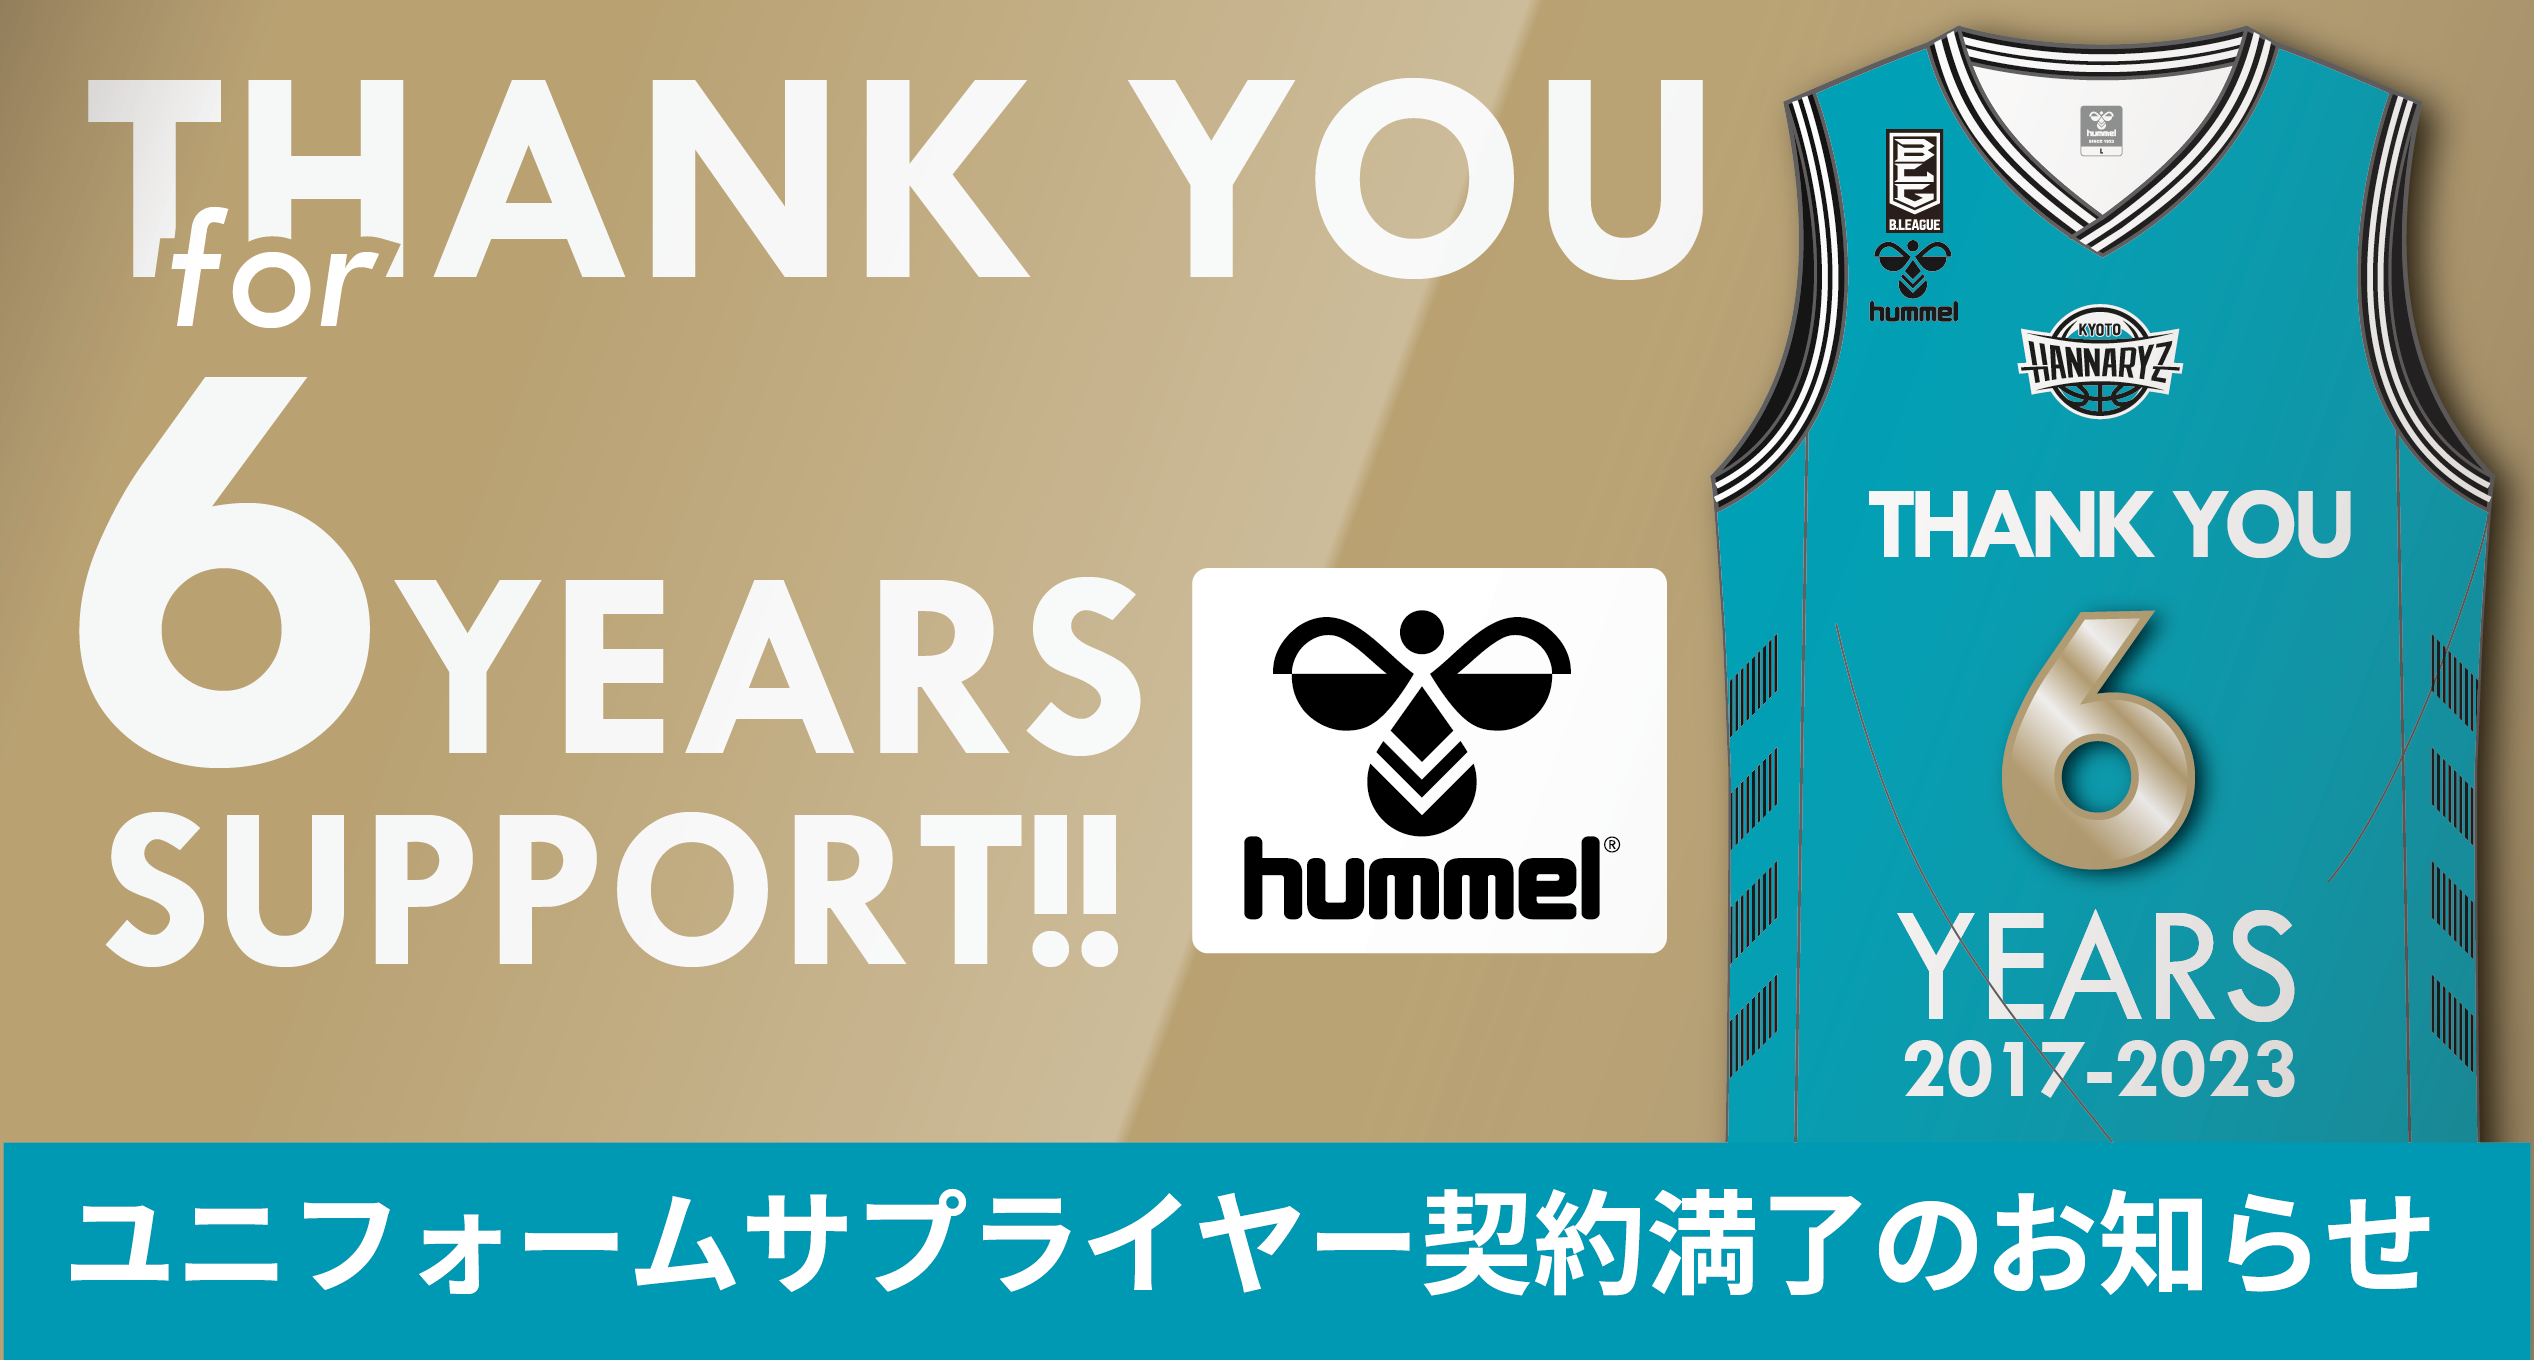 ユニフォームサプライヤー【hummel】契約満了のお知らせ | 京都 